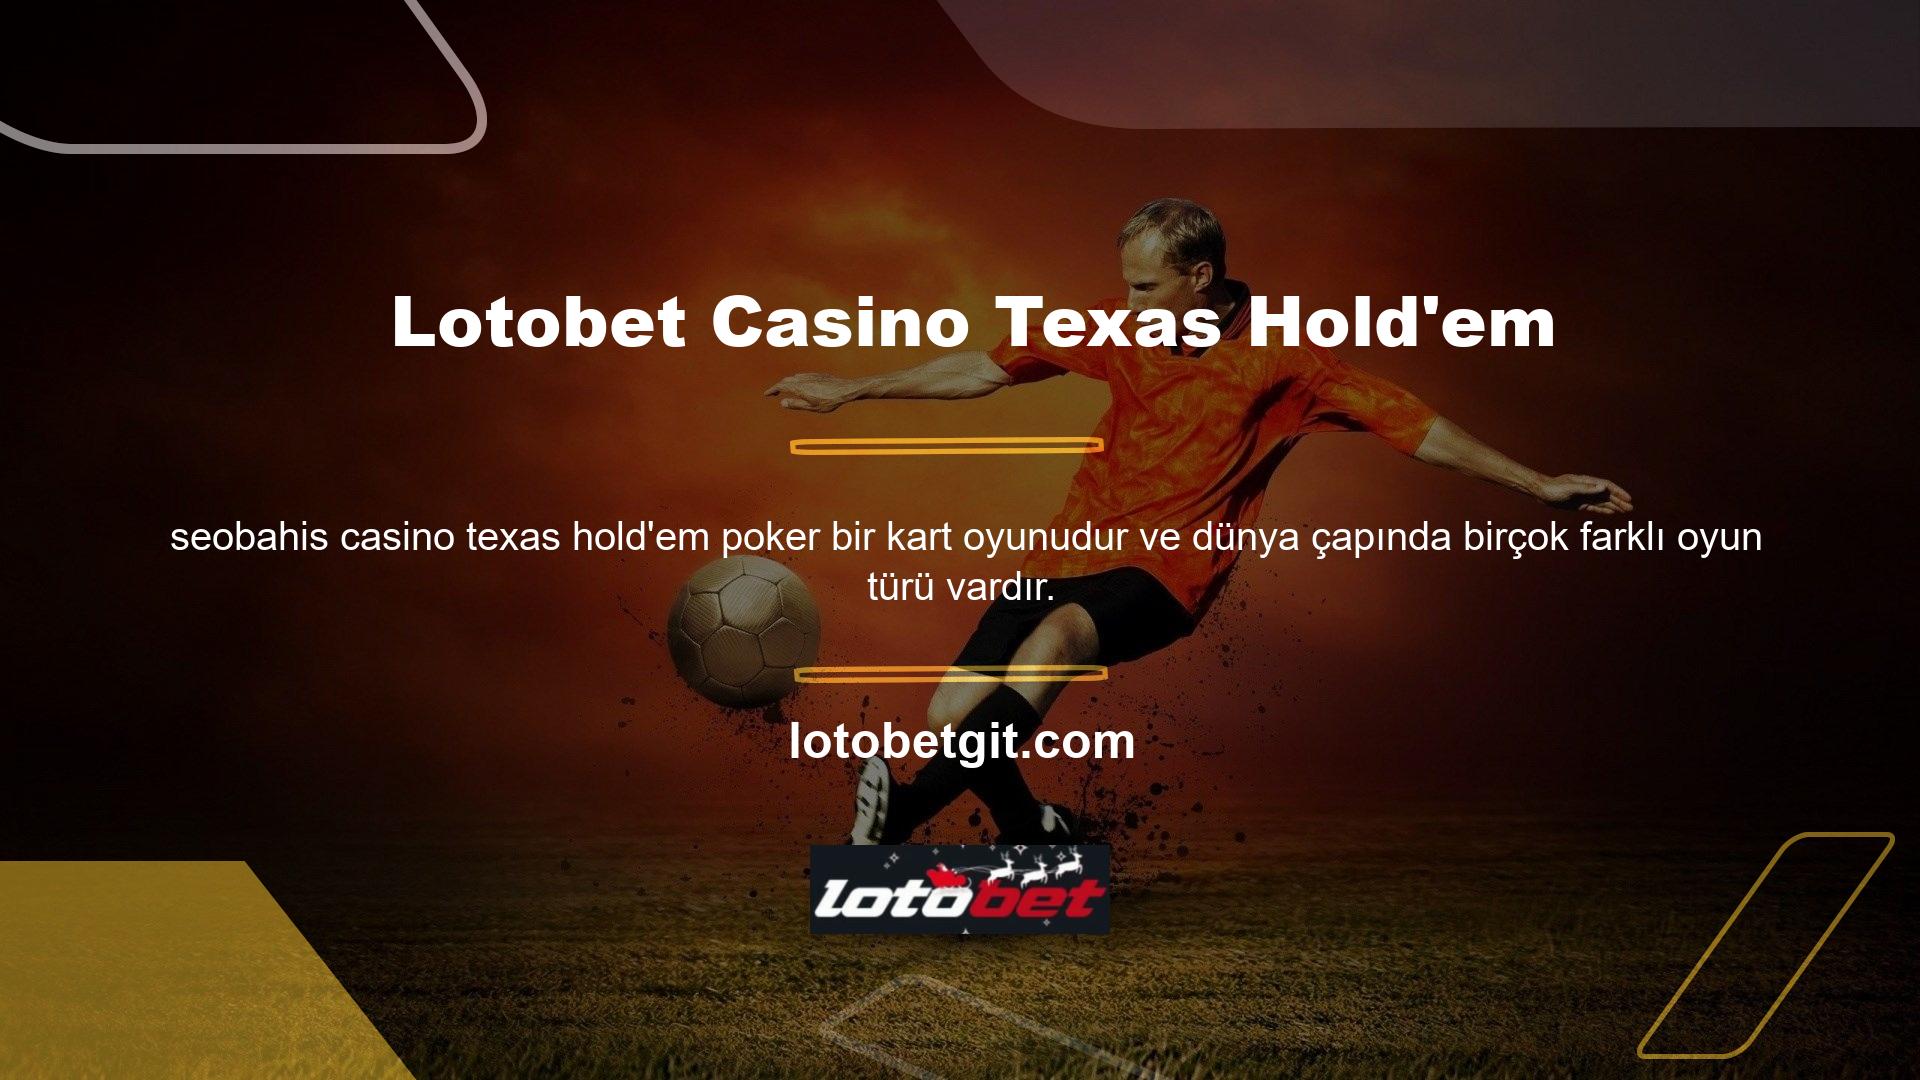 Canlı oyun sitelerinde ve sinema salonlarında en popüler poker türü Texas Hold'em Casino'dur